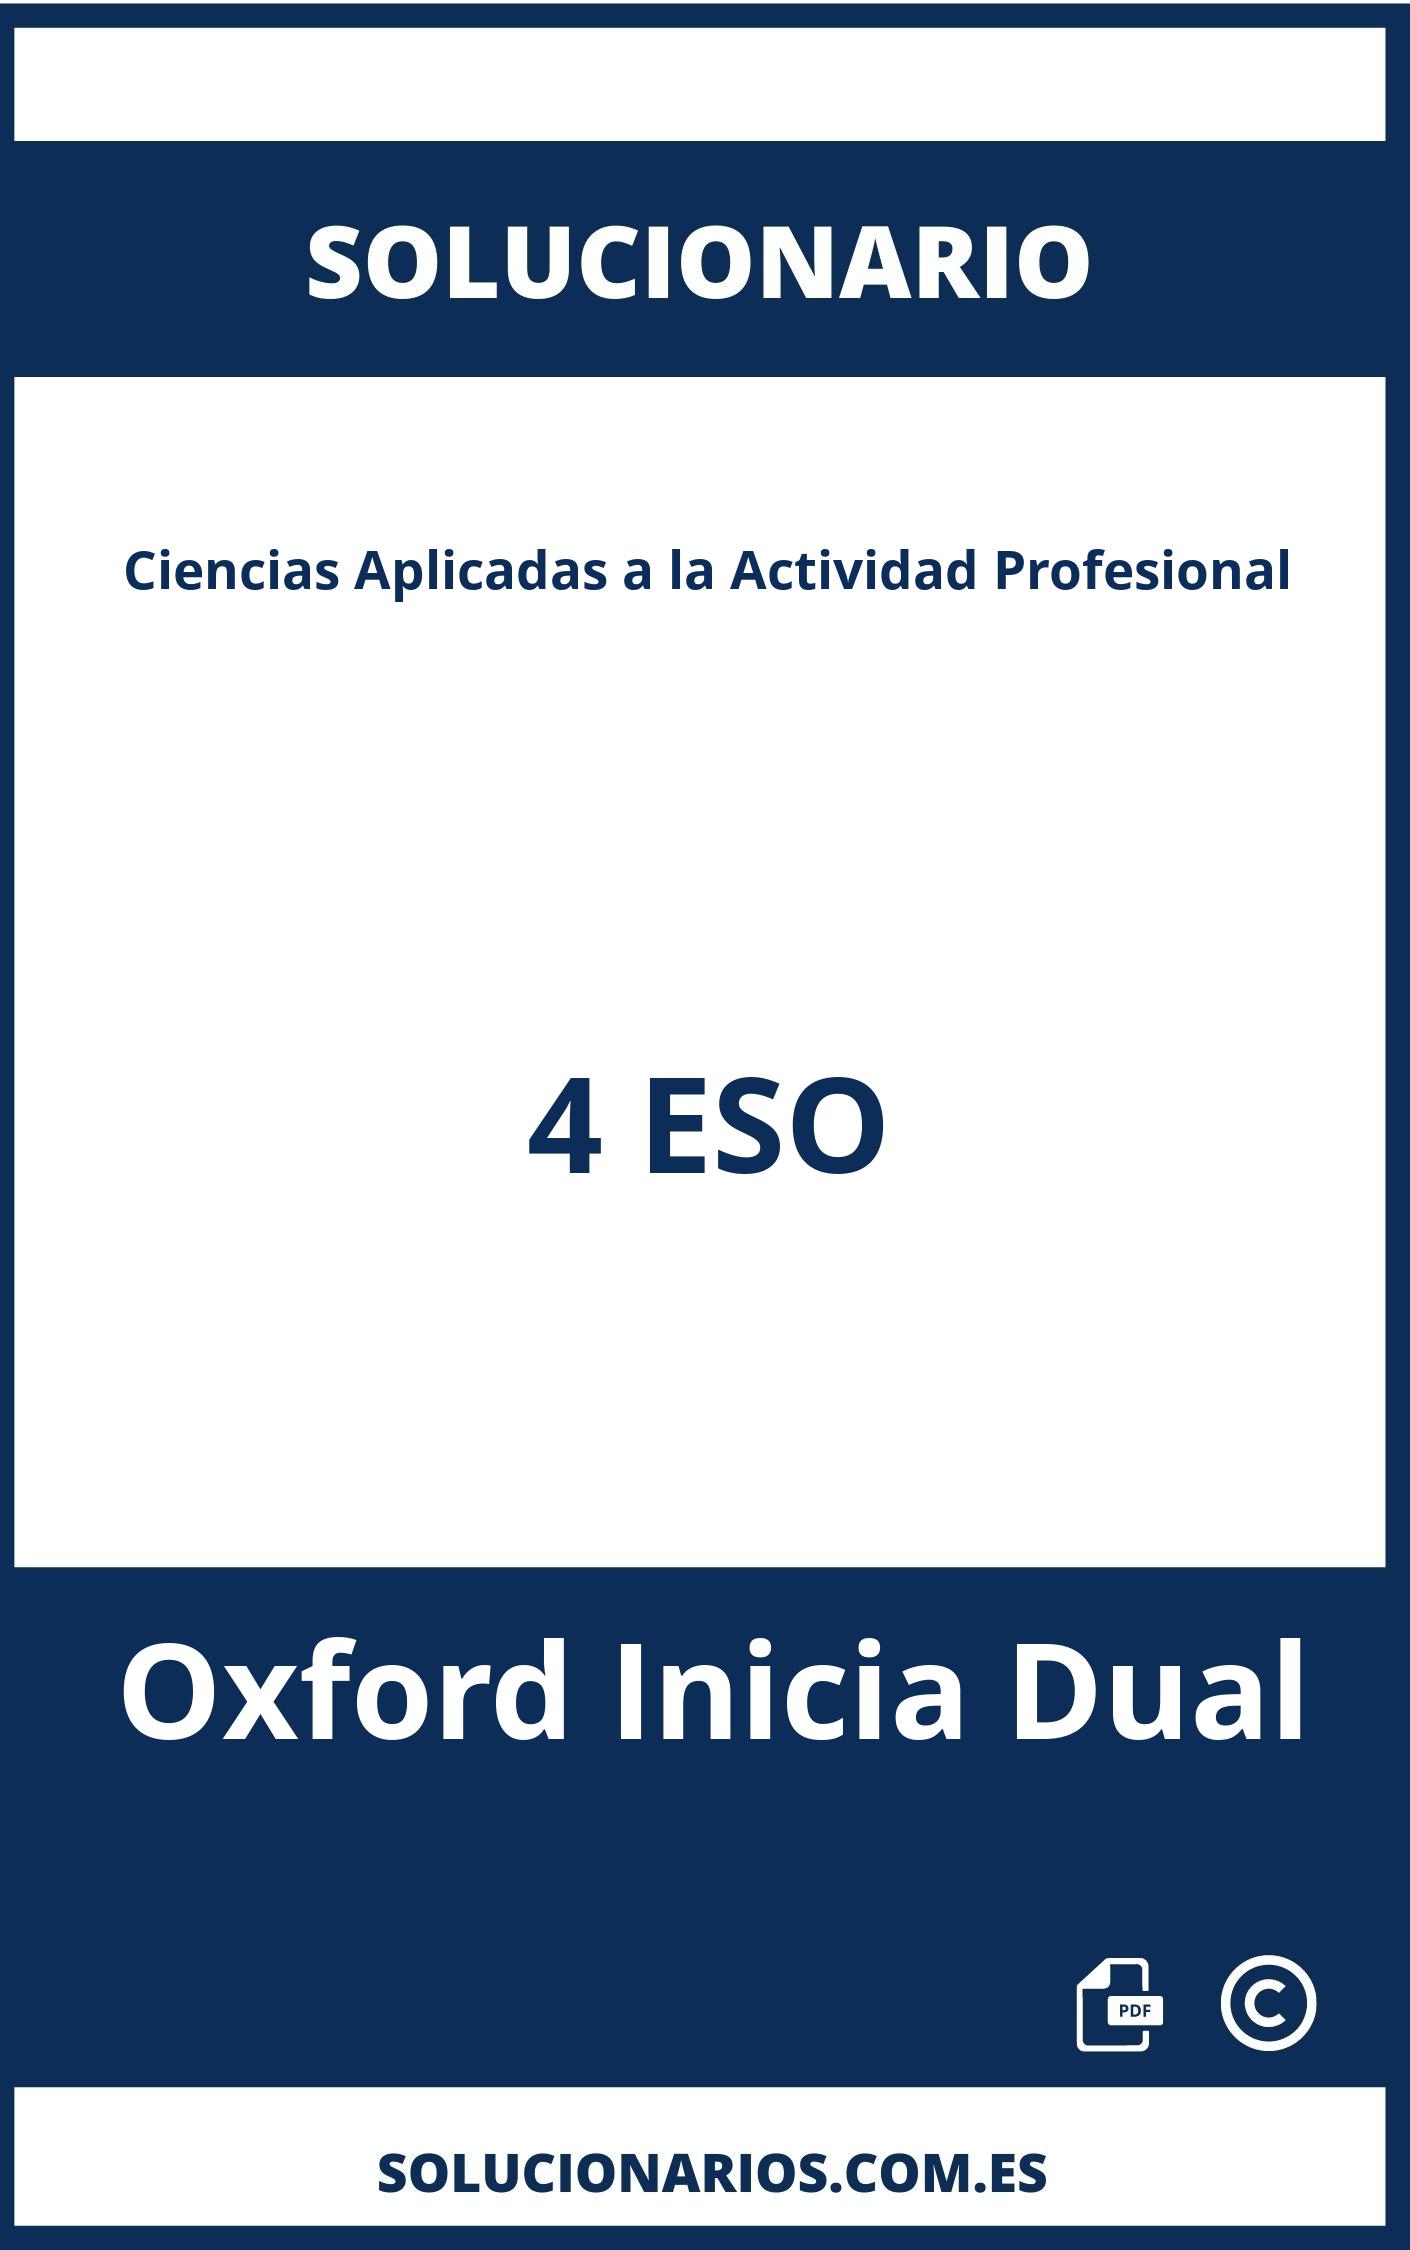 Solucionario Ciencias Aplicadas a la Actividad Profesional 4 ESO Oxford Inicia Dual